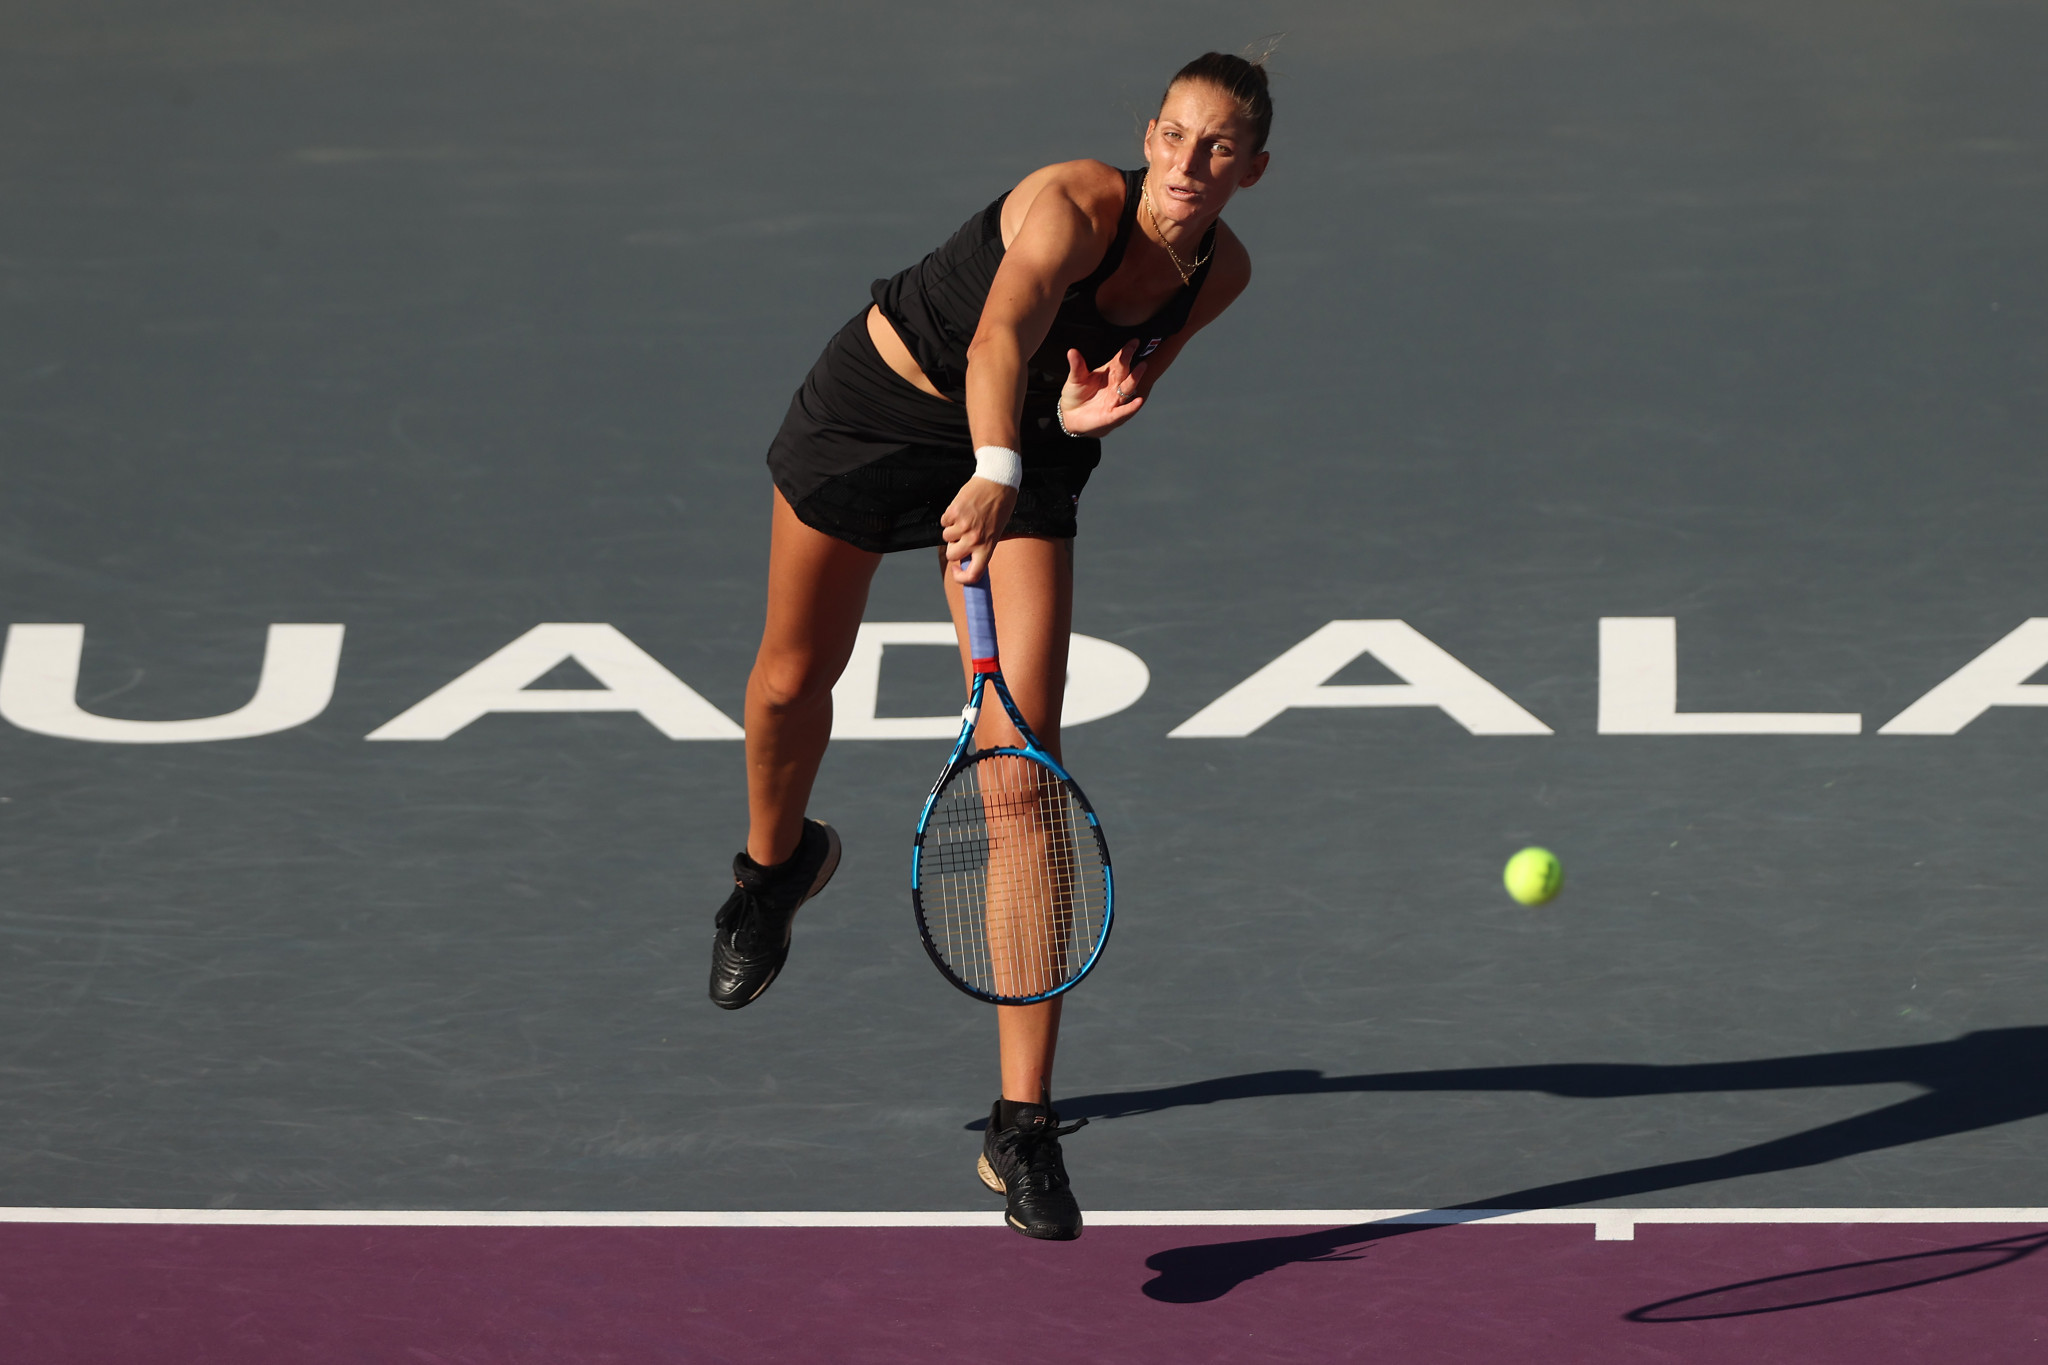 Plíšková battles back from a set and a break down to beat compatriot Krejčíková at WTA Finals